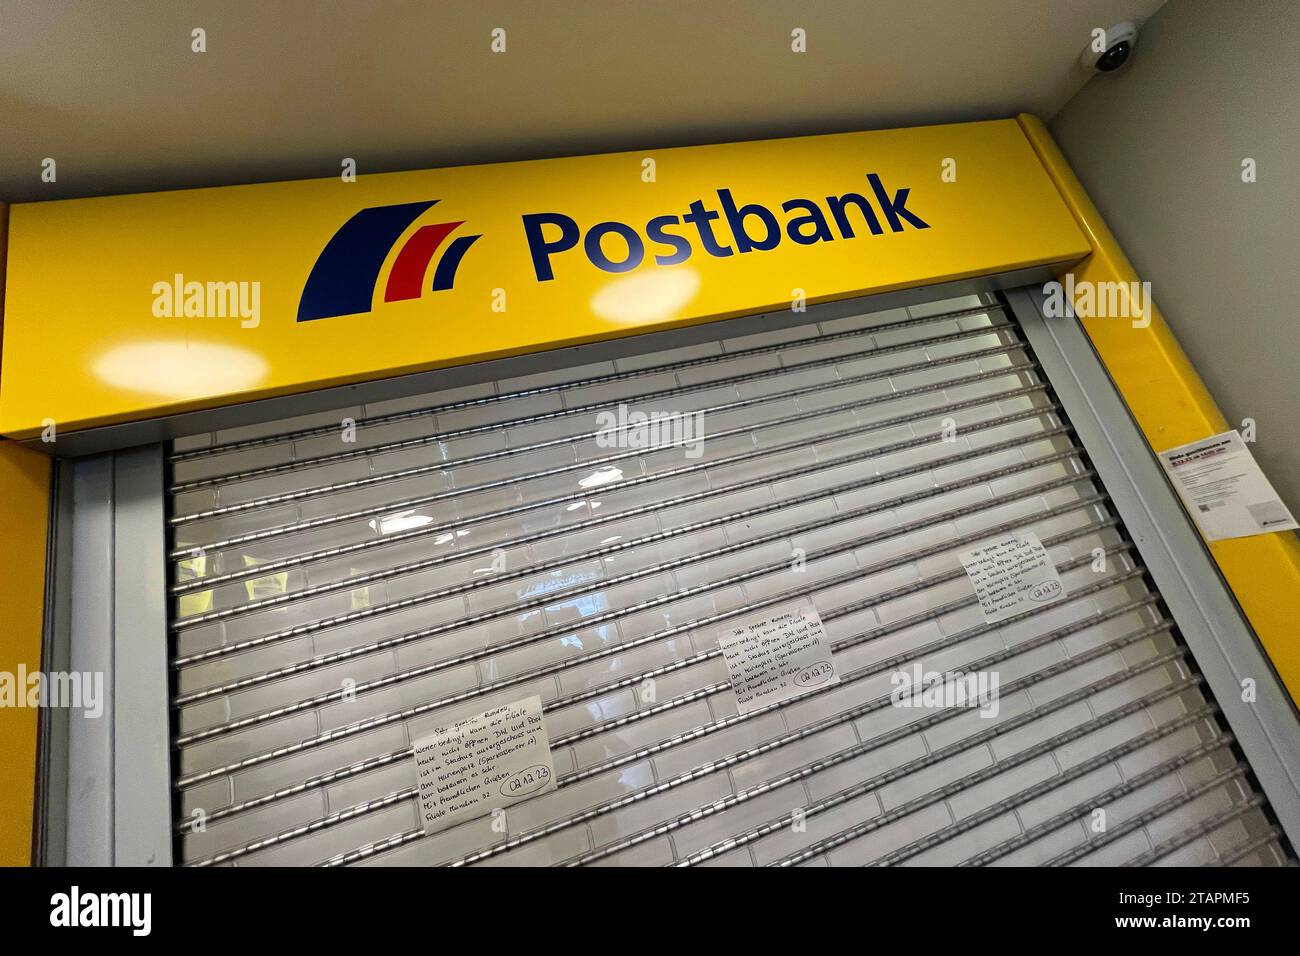 Geschlossene Postbank filiale à Muenchen, Schliessung. *** Fermeture de la succursale Postbank à Munich, fermeture crédit : Imago/Alamy Live News Banque D'Images